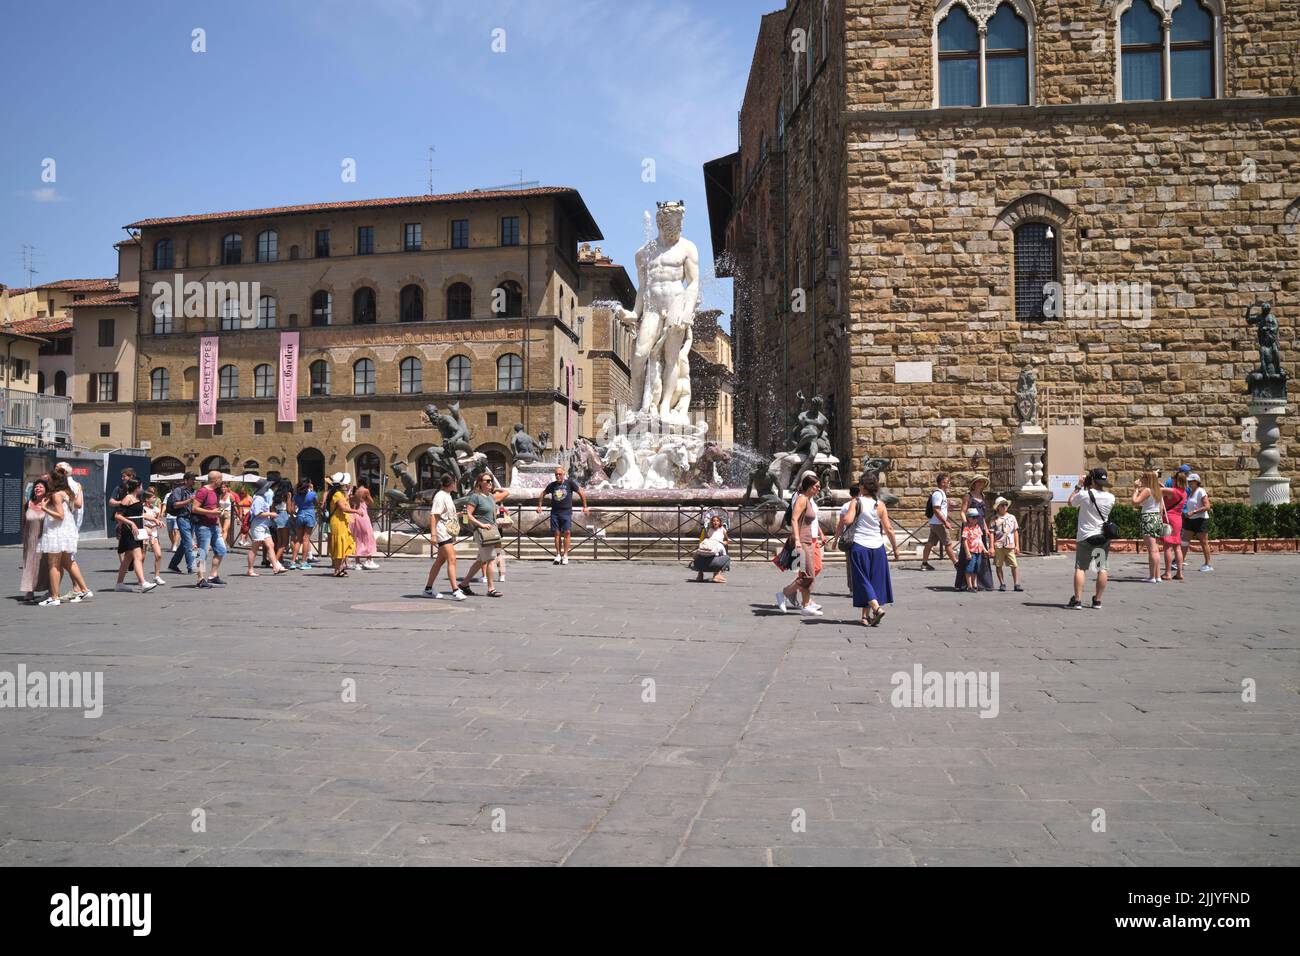 Piazza della Signoria Florence Italy Stock Photo